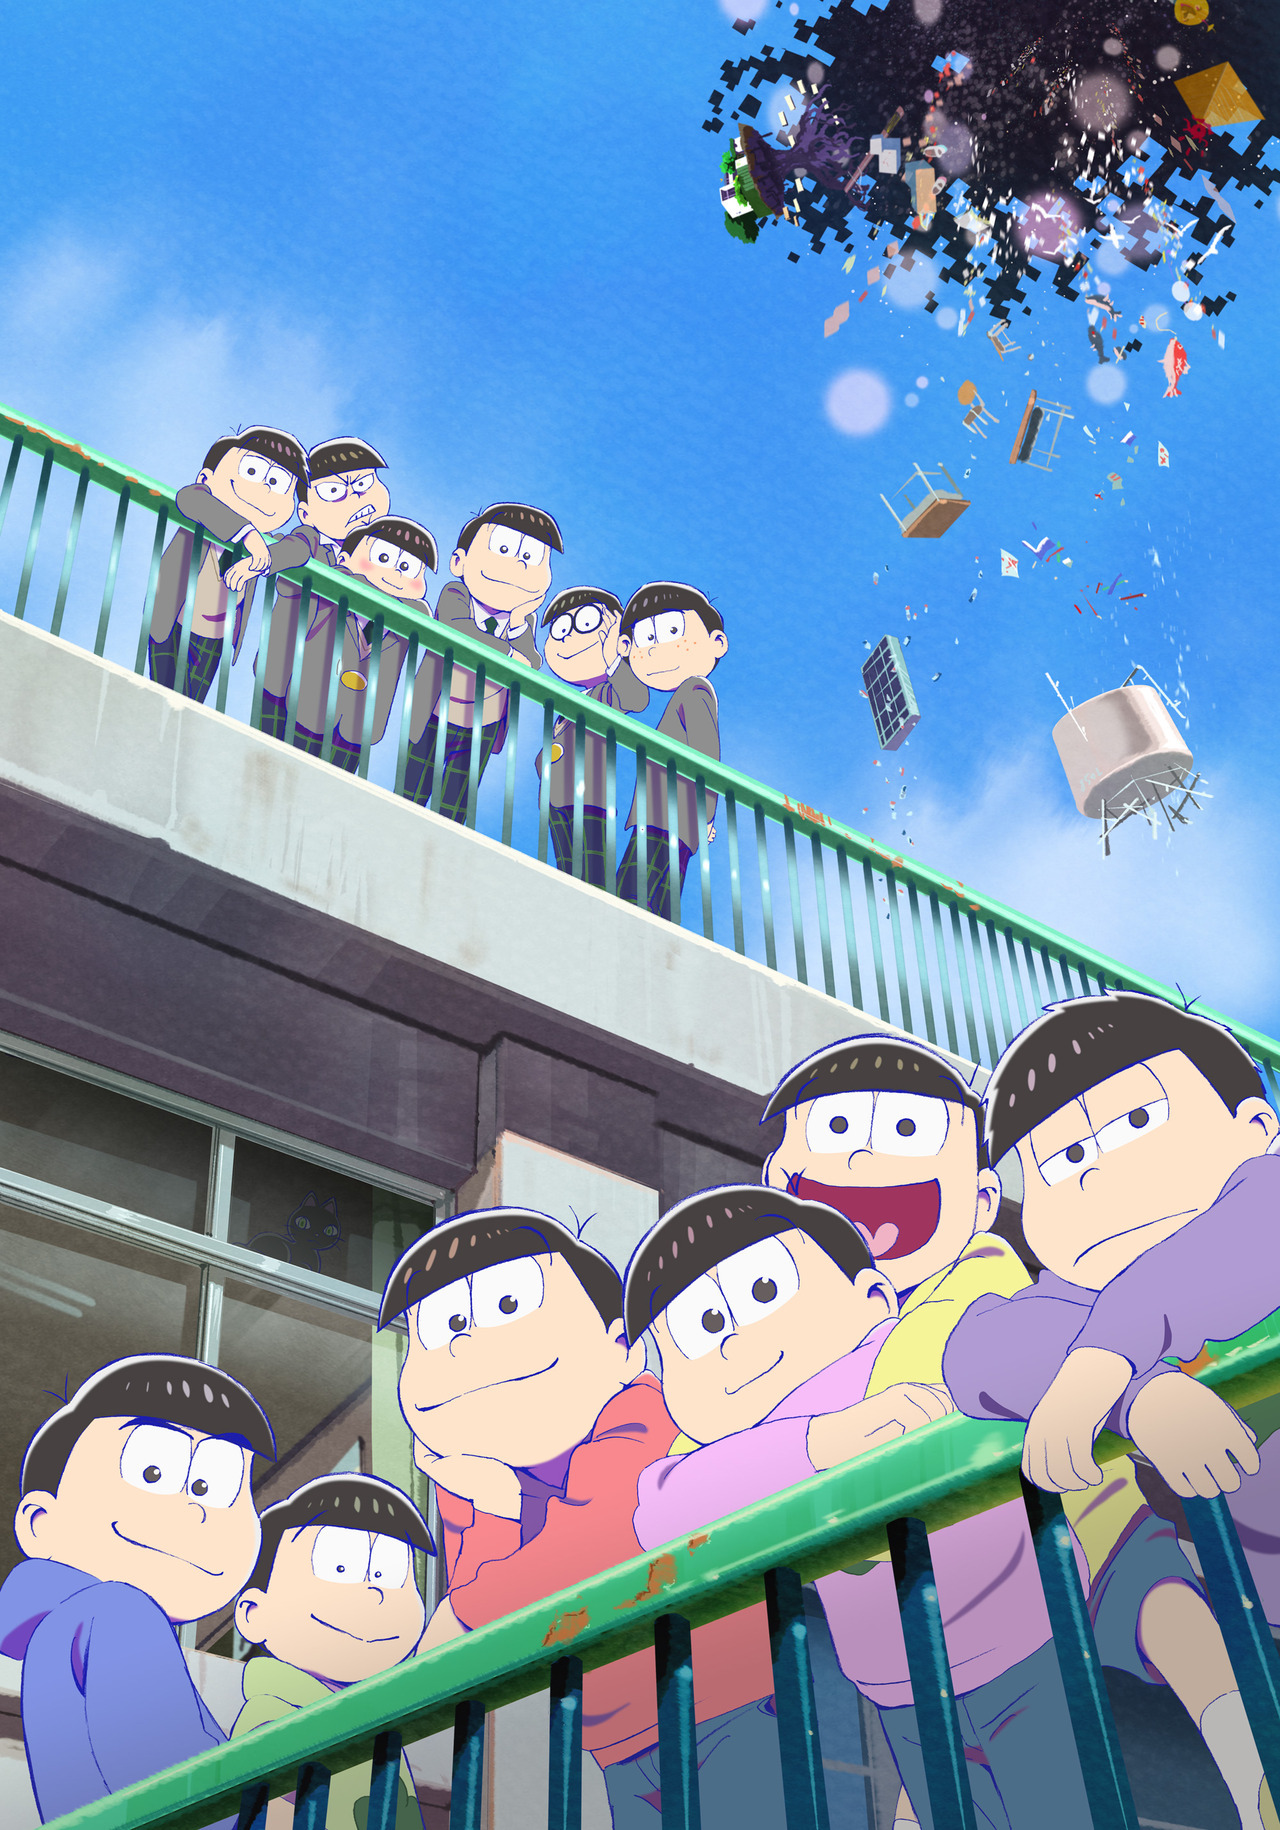 âOsomatsu-san Movieâ anime PV and visual. It will premiere in Japanese theaters on March 15th (Studio Pierrot)